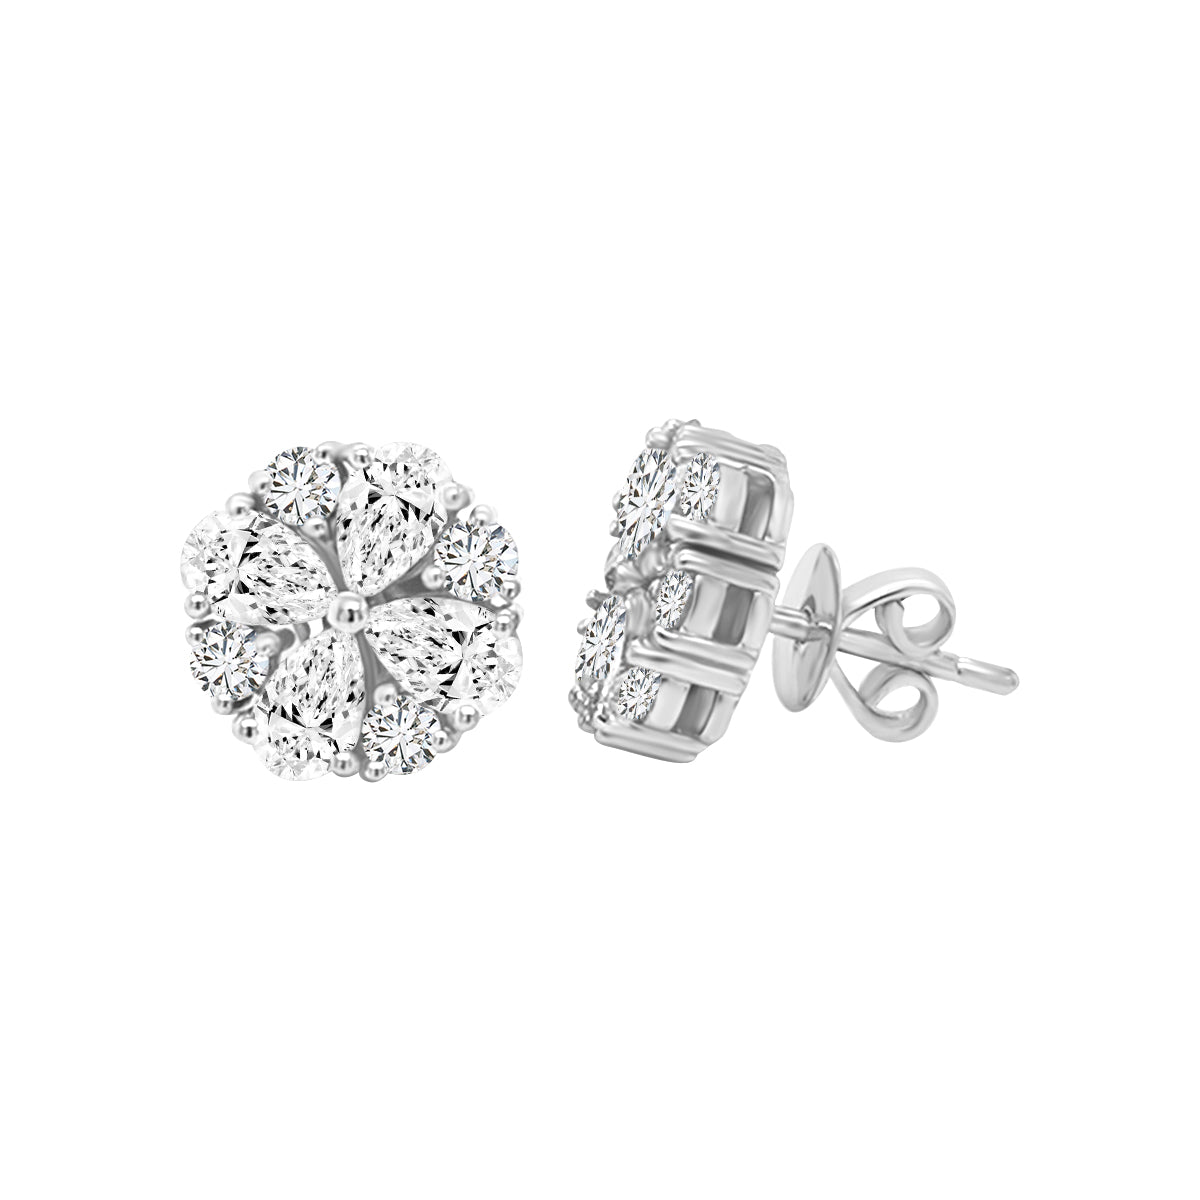 Floral, Flower Design Diamond Stud Earrings In 18k White Gold.